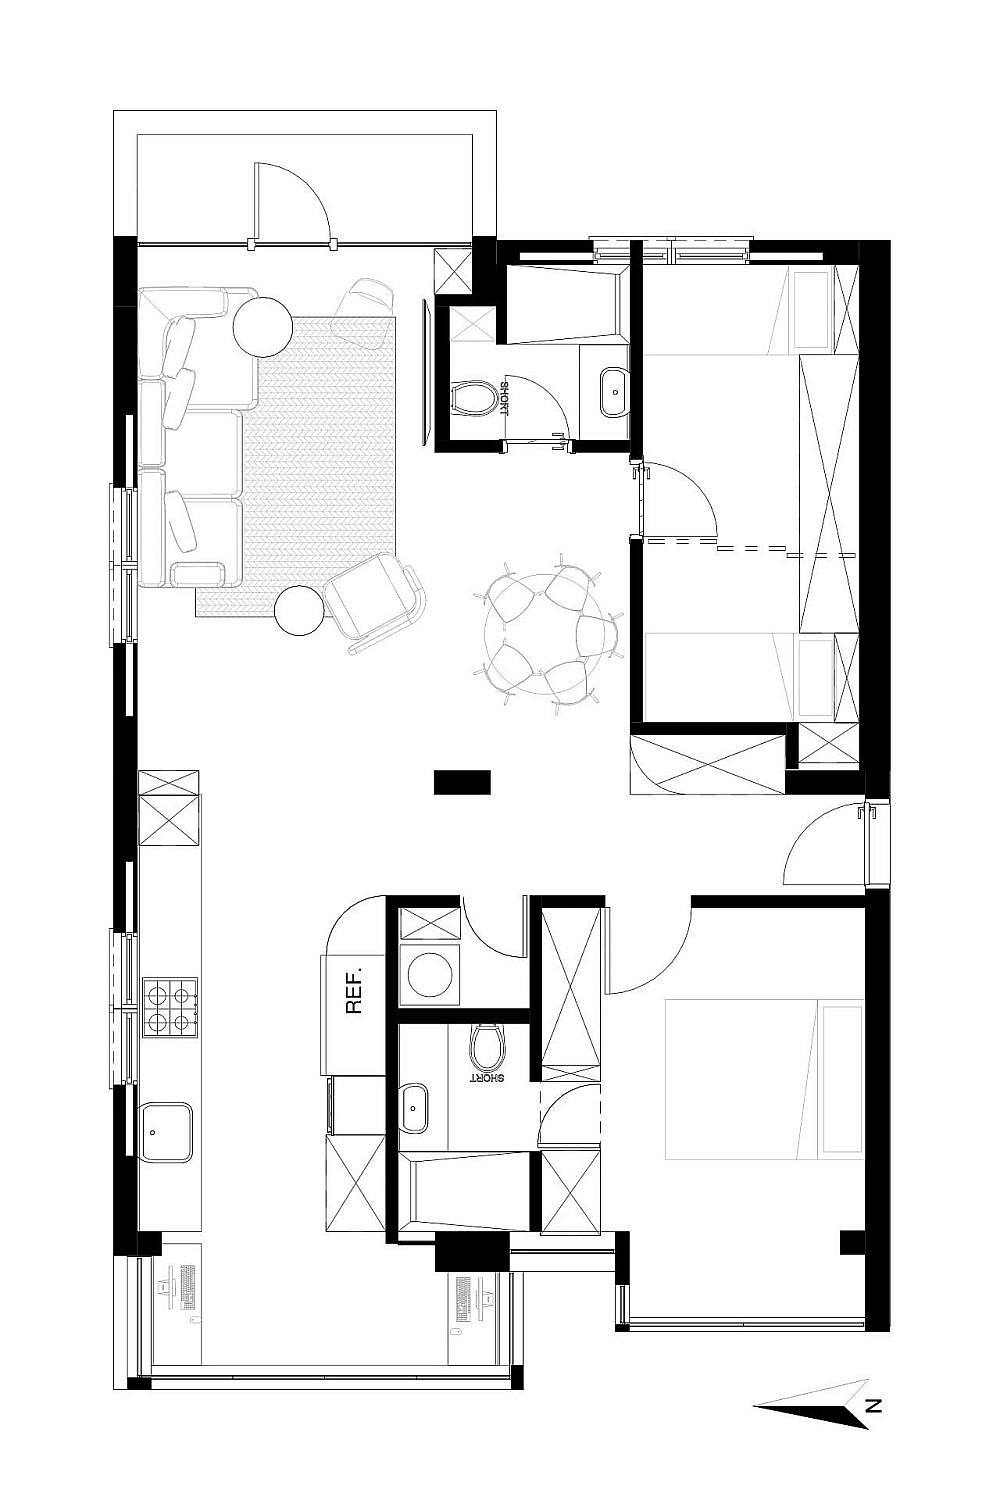 תכנית הדירה אחרי השיפוץ | אדריכלות ועיצוב פנים: אפרת וינרב